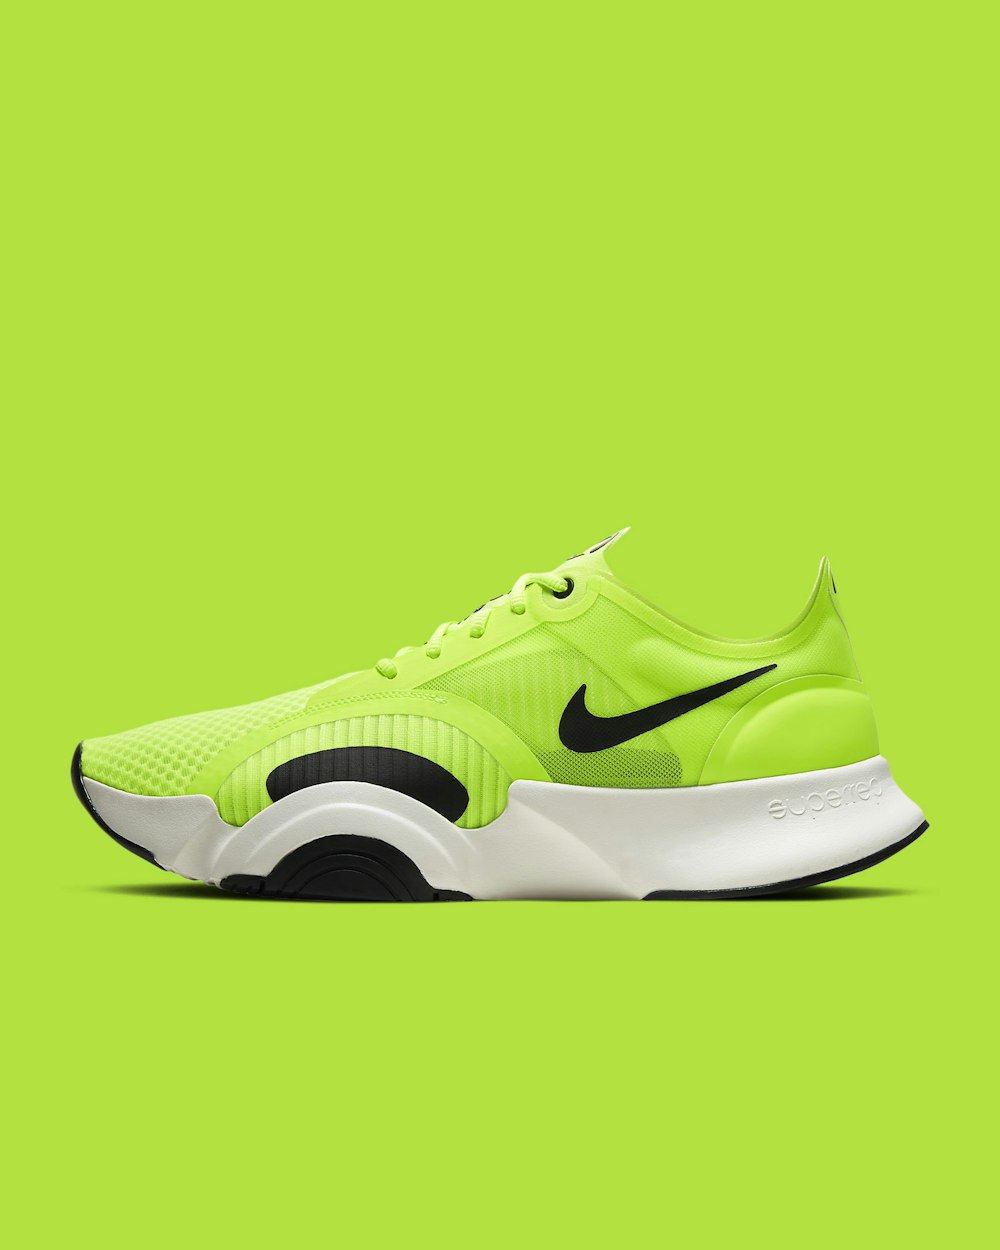 Zapatillas deportivas Nike verdes y negras